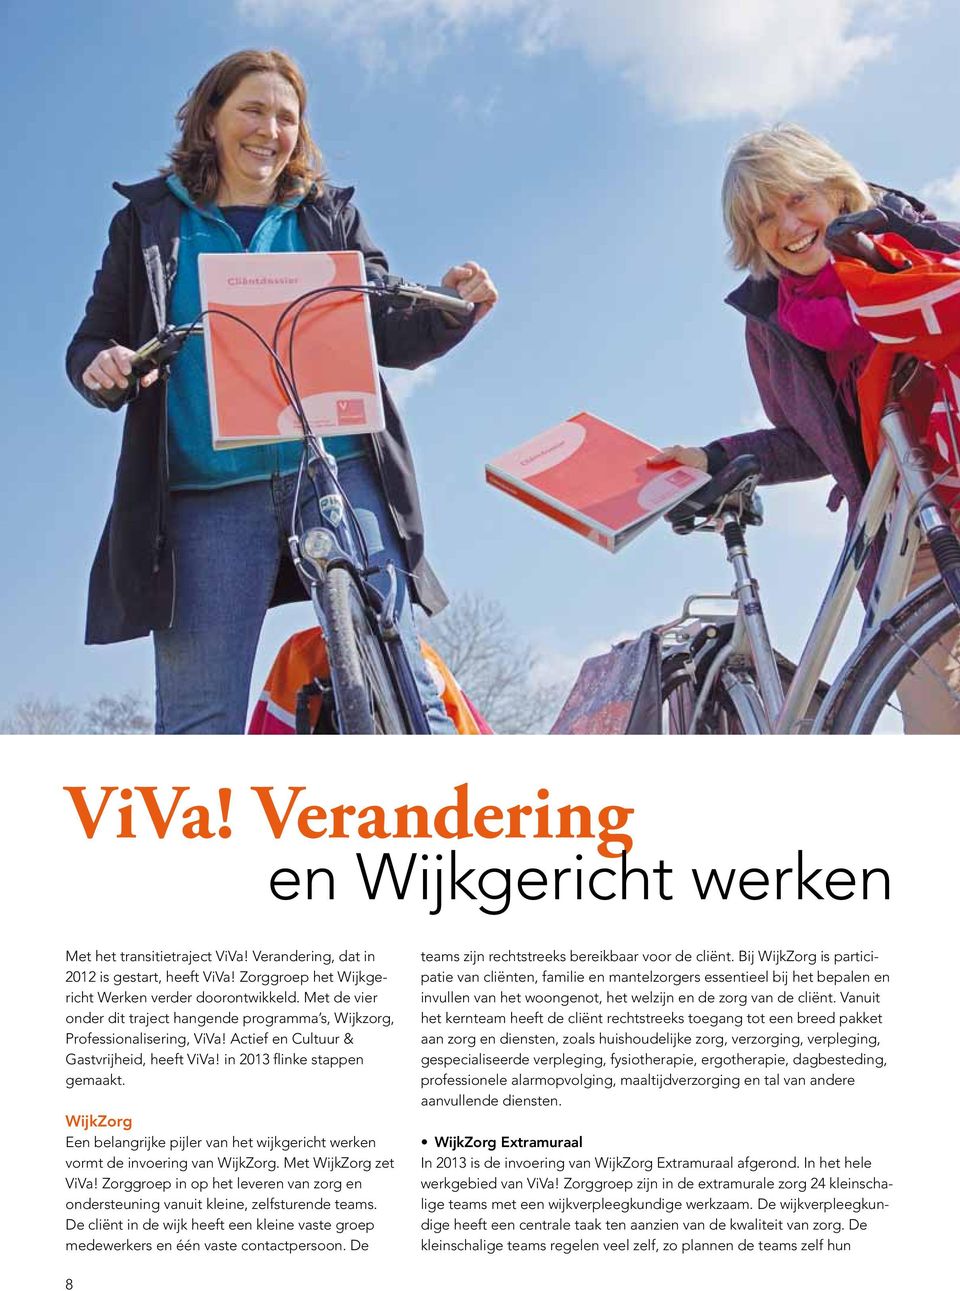 WijkZorg Een belangrijke pijler van het wijkgericht werken vormt de invoering van WijkZorg. Met WijkZorg zet ViVa!